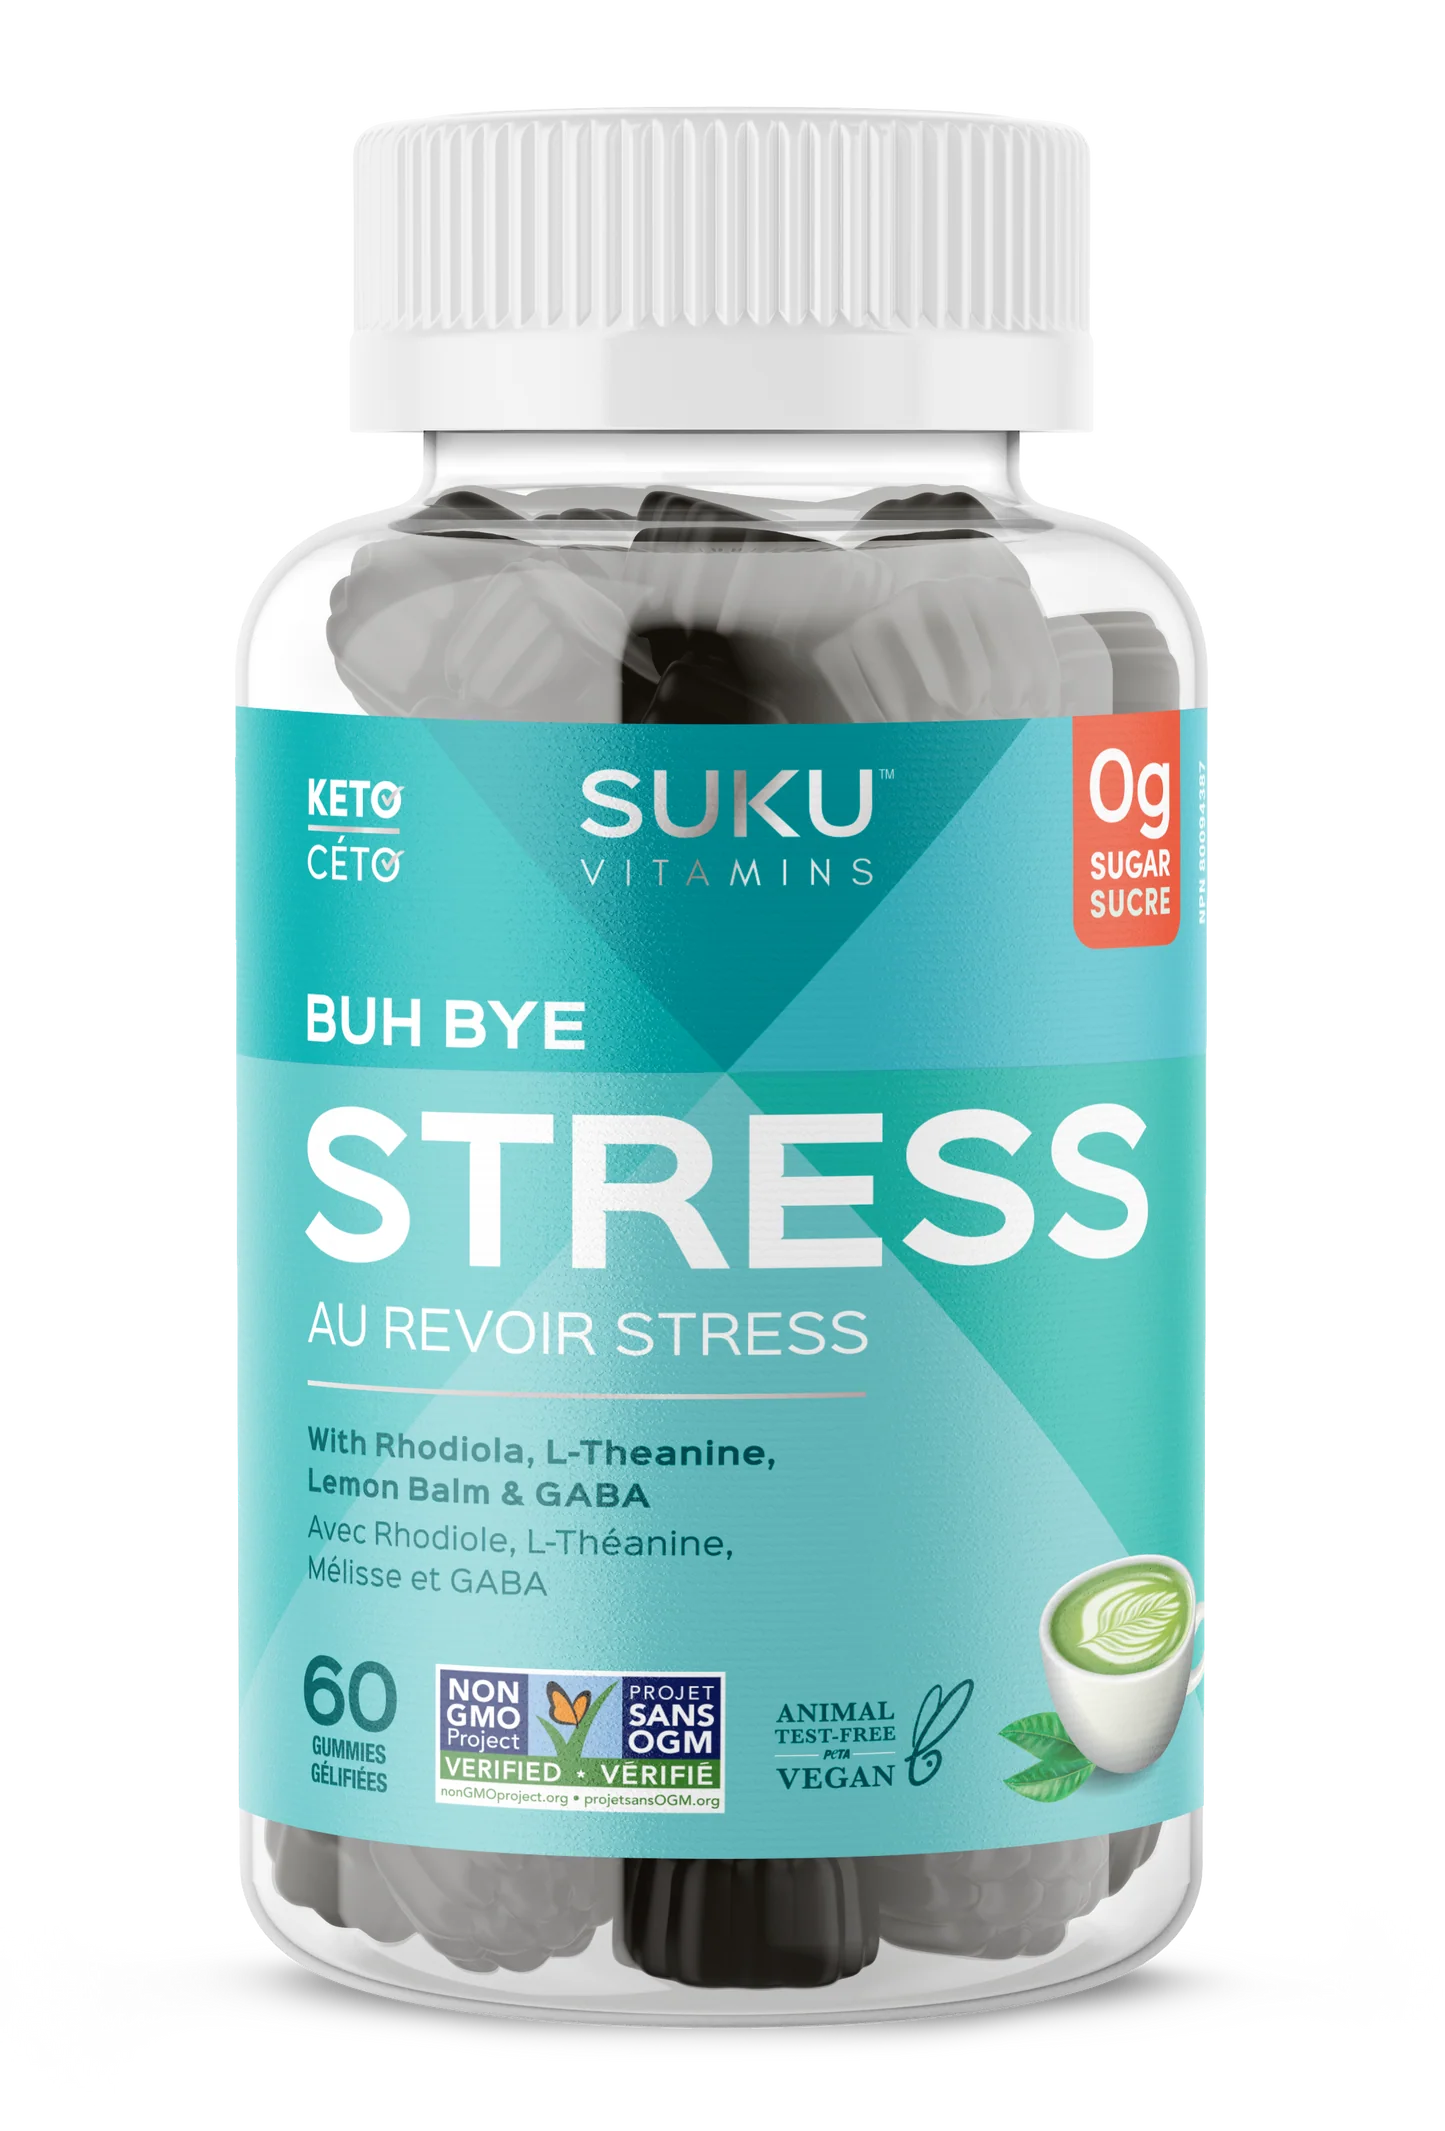 Buh Bye Stress - Au Revoir Stress